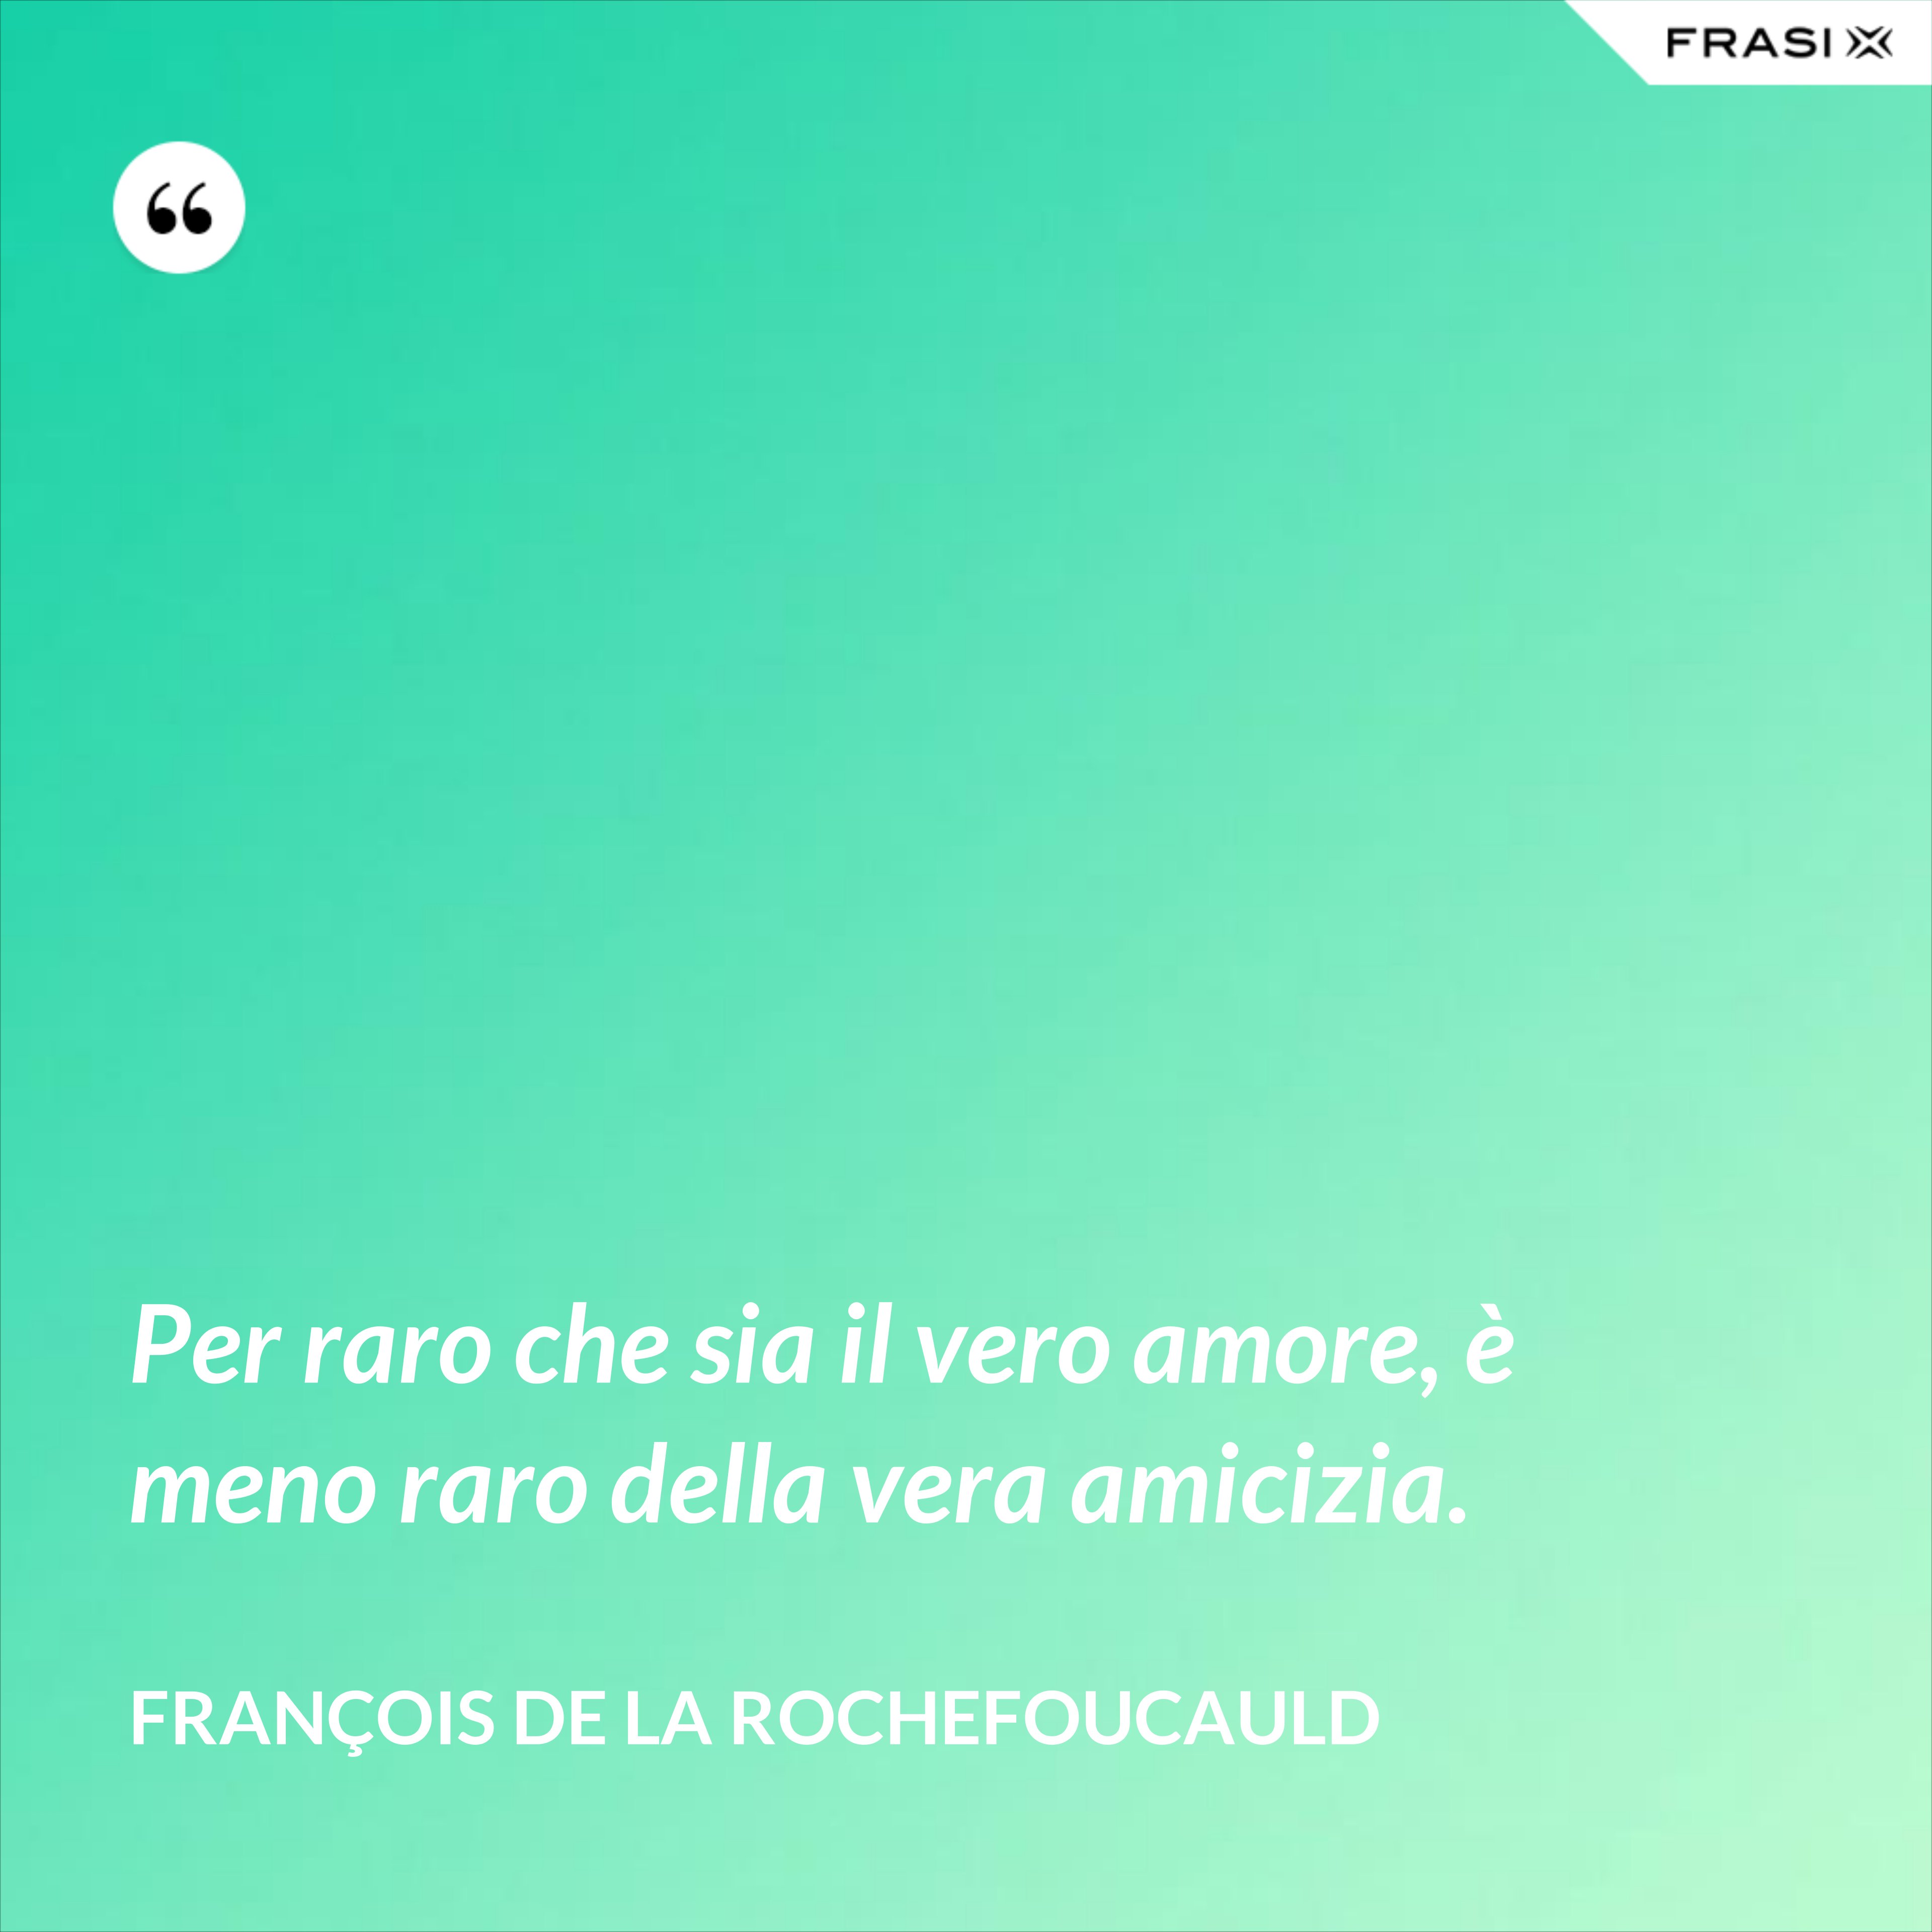 Per raro che sia il vero amore, è meno raro della vera amicizia. - François de La Rochefoucauld